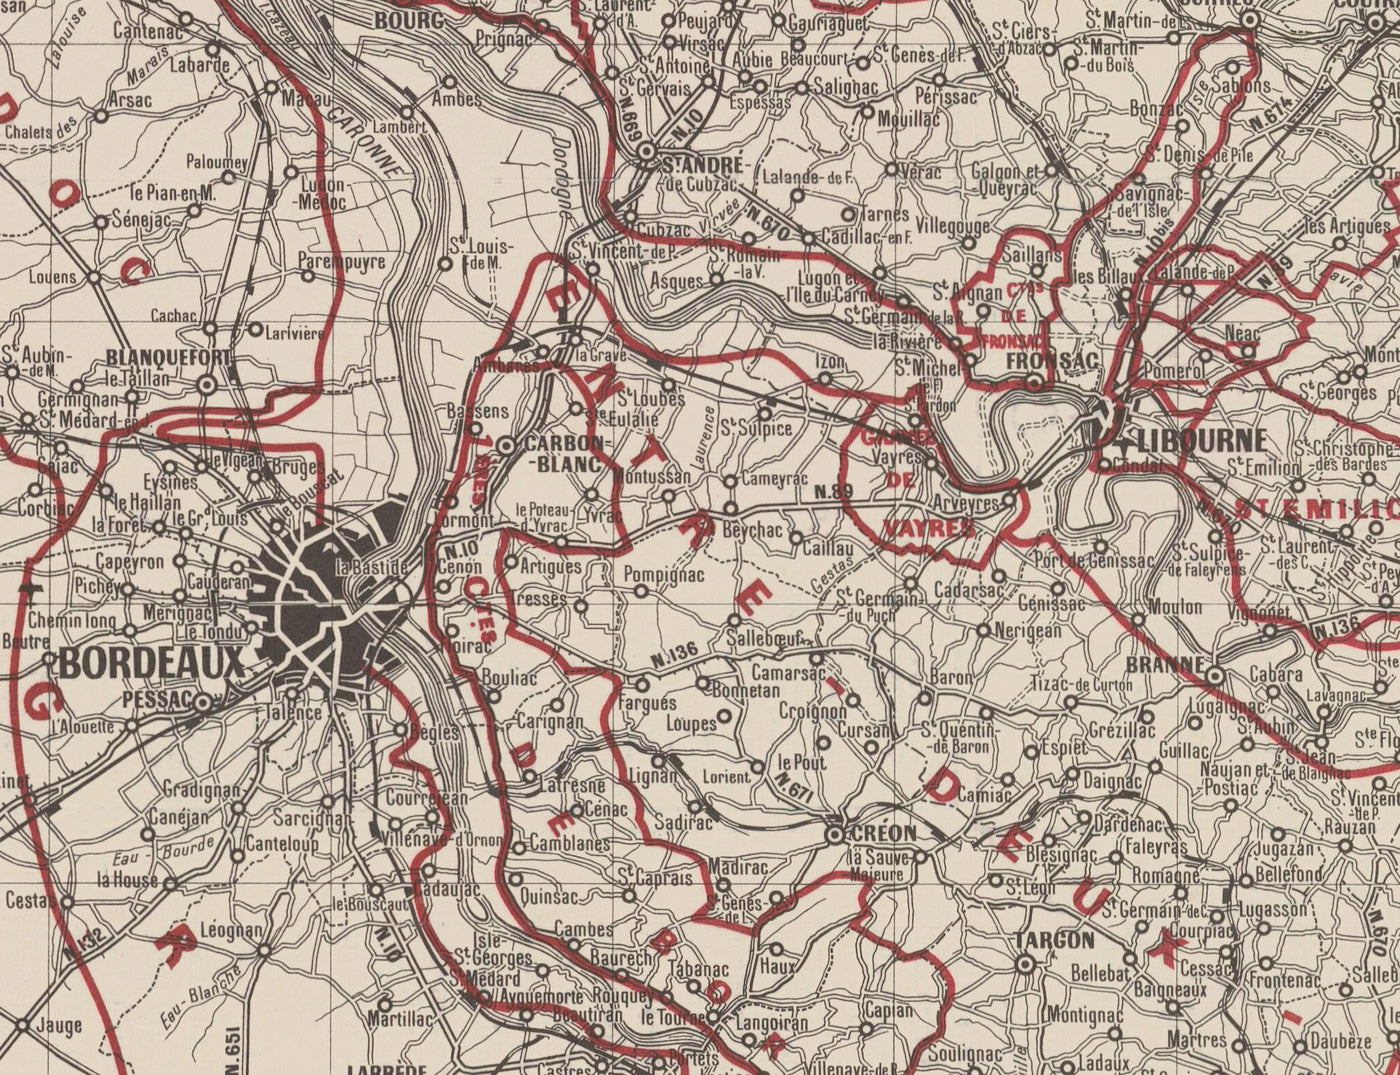 Carte Ancienne Carte des Vins de Bordeaux en 1948 - Garonne, Pessac, Blanquefort, Carbon-Blanc, Libourne